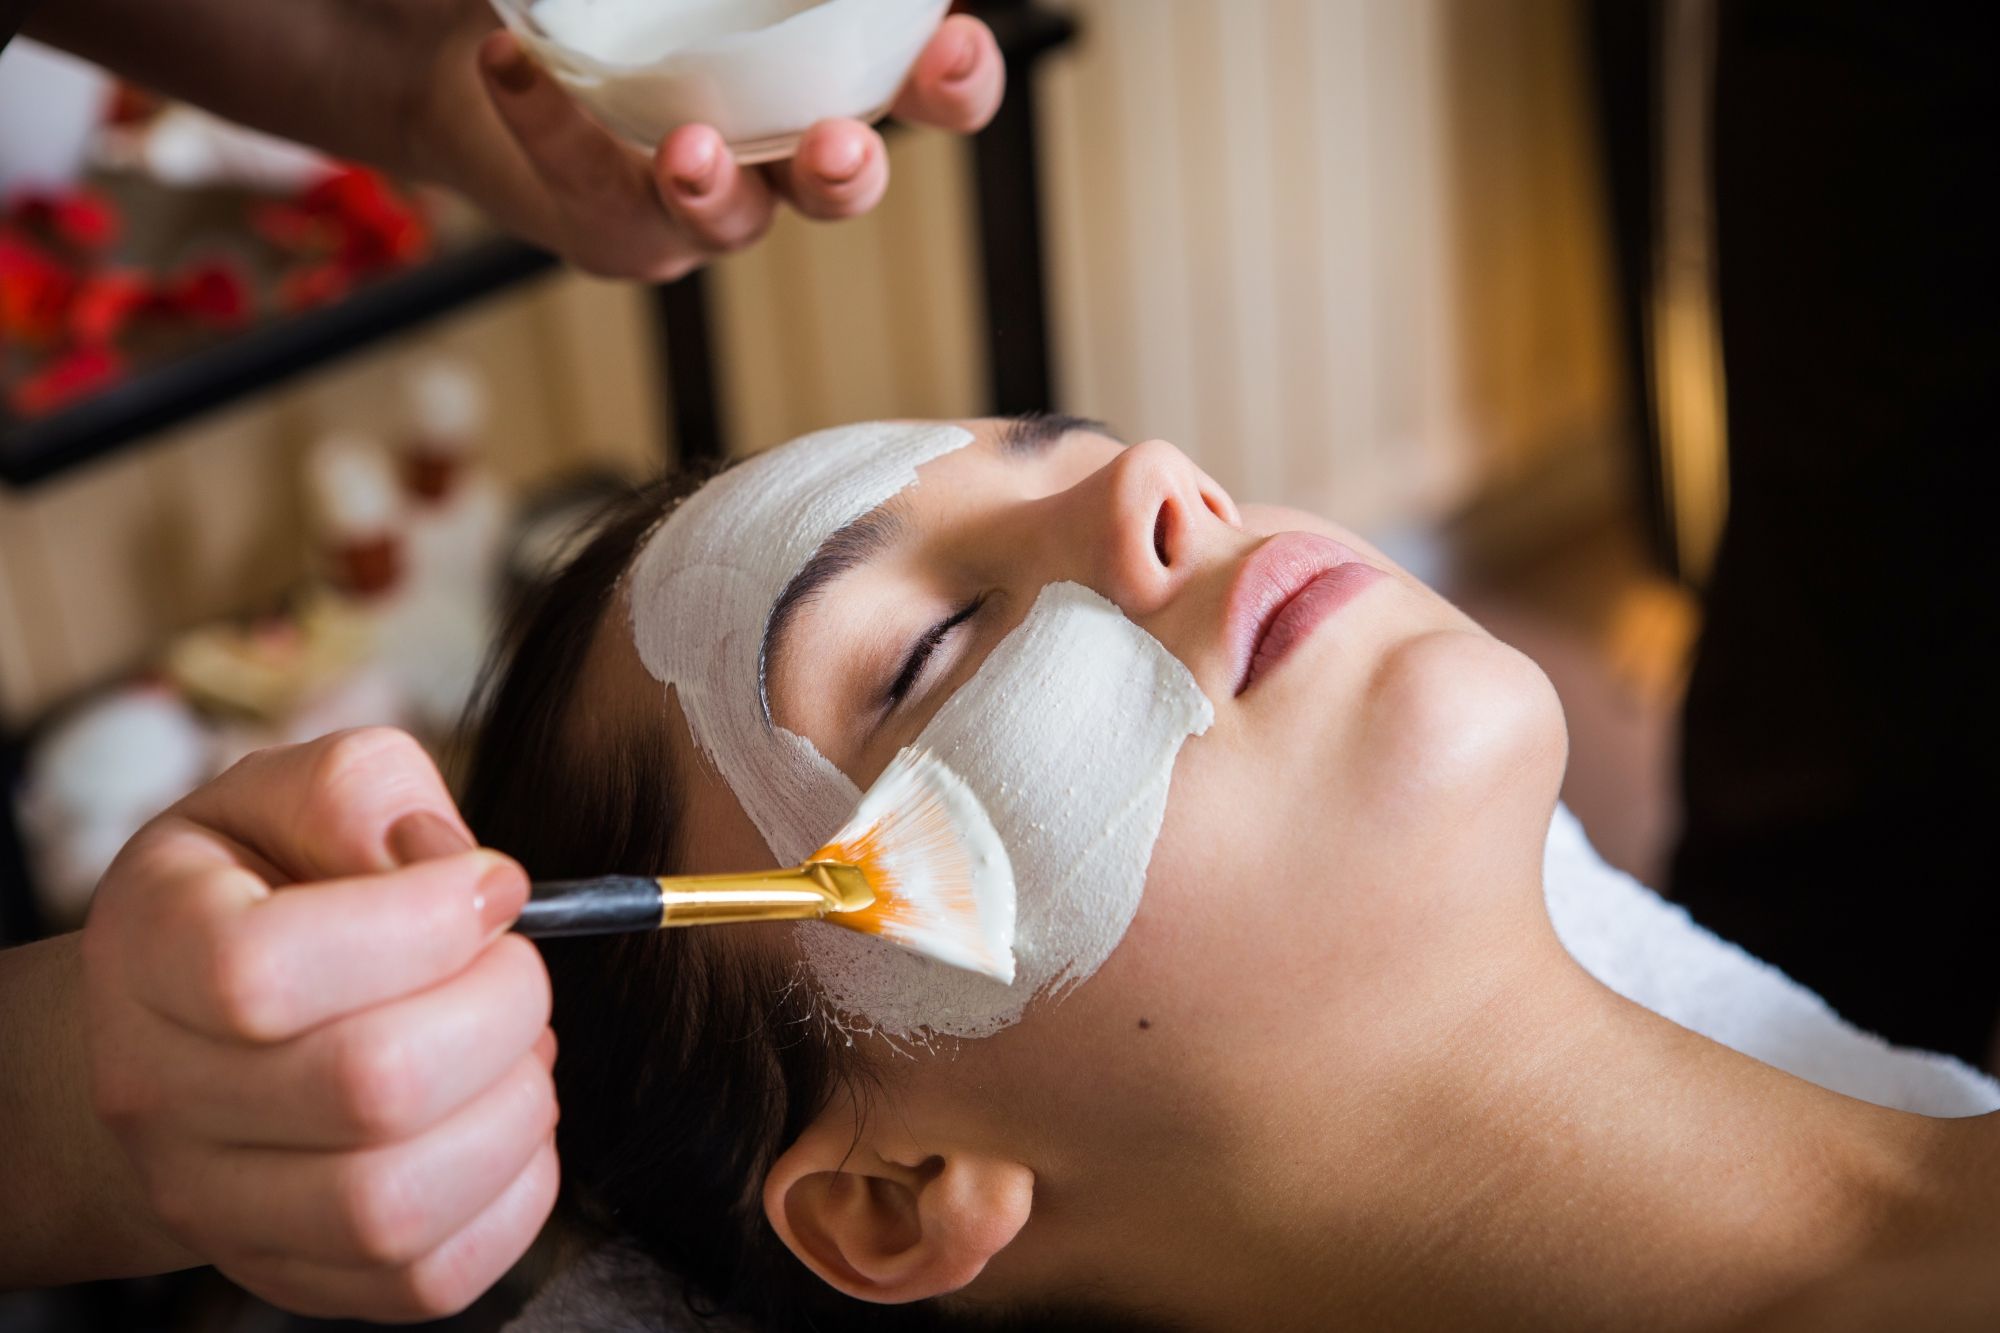 Facial mask spa treatment application at a med spa.